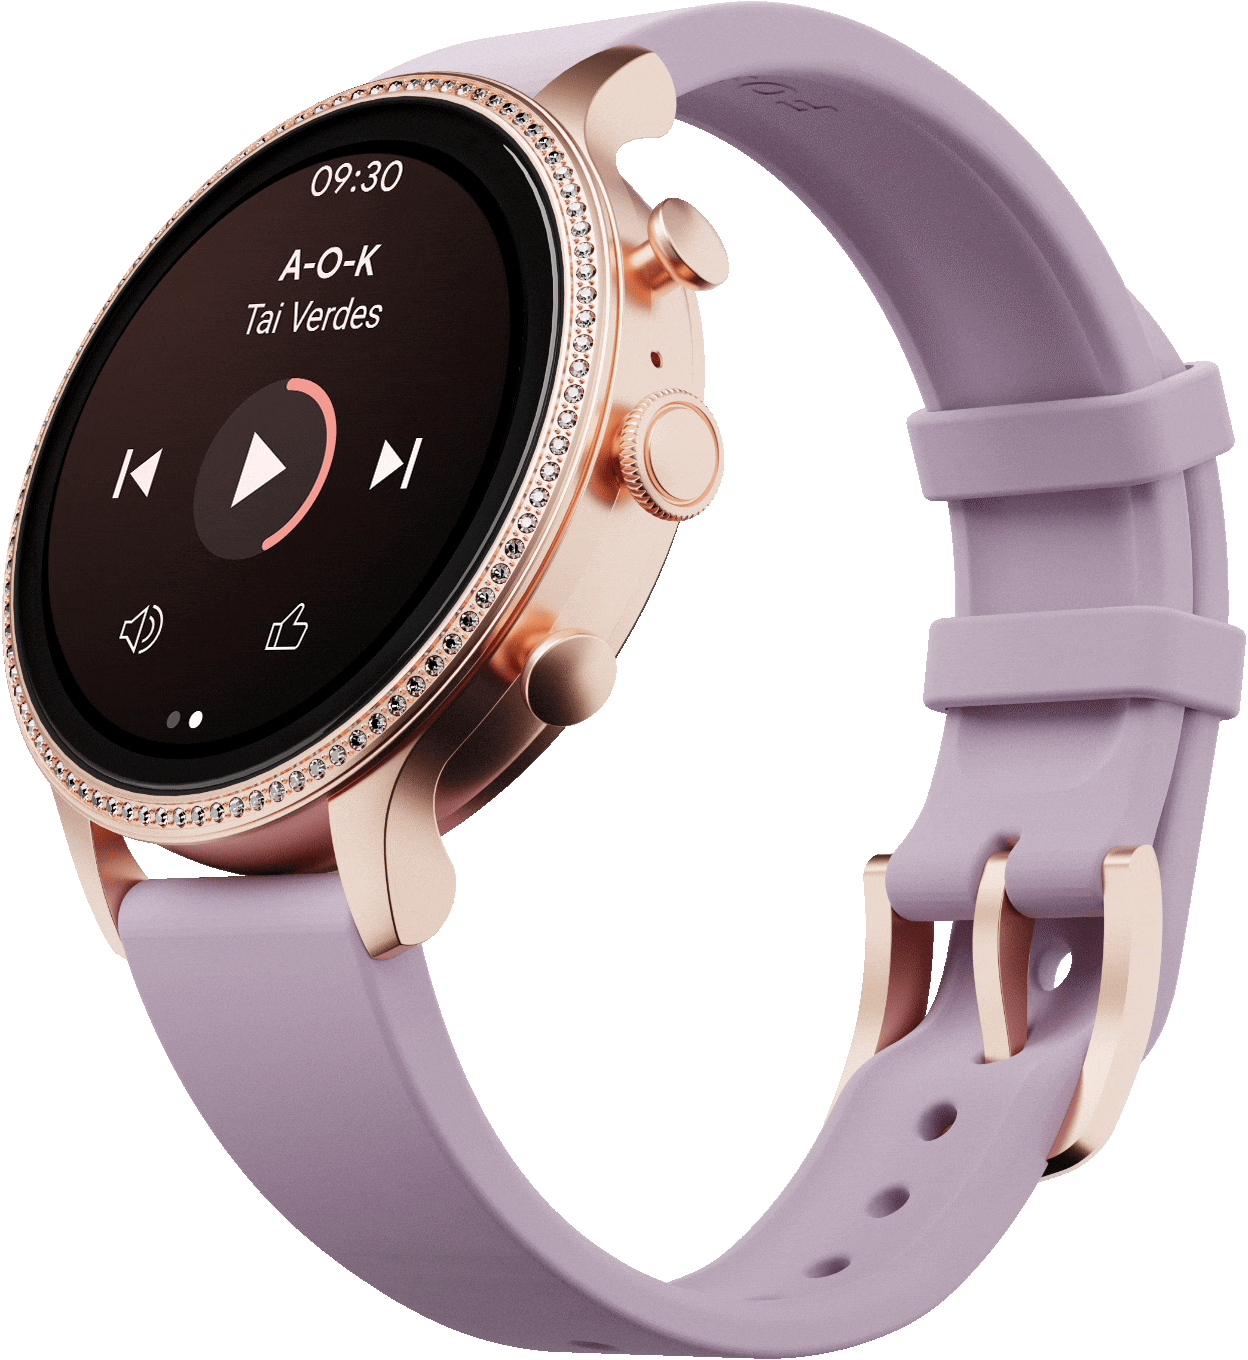 Un smartwatch Gen 6 con correa de silicona morada en el que se reproduce una canción en la esfera y se muestran iconos de nota musical.